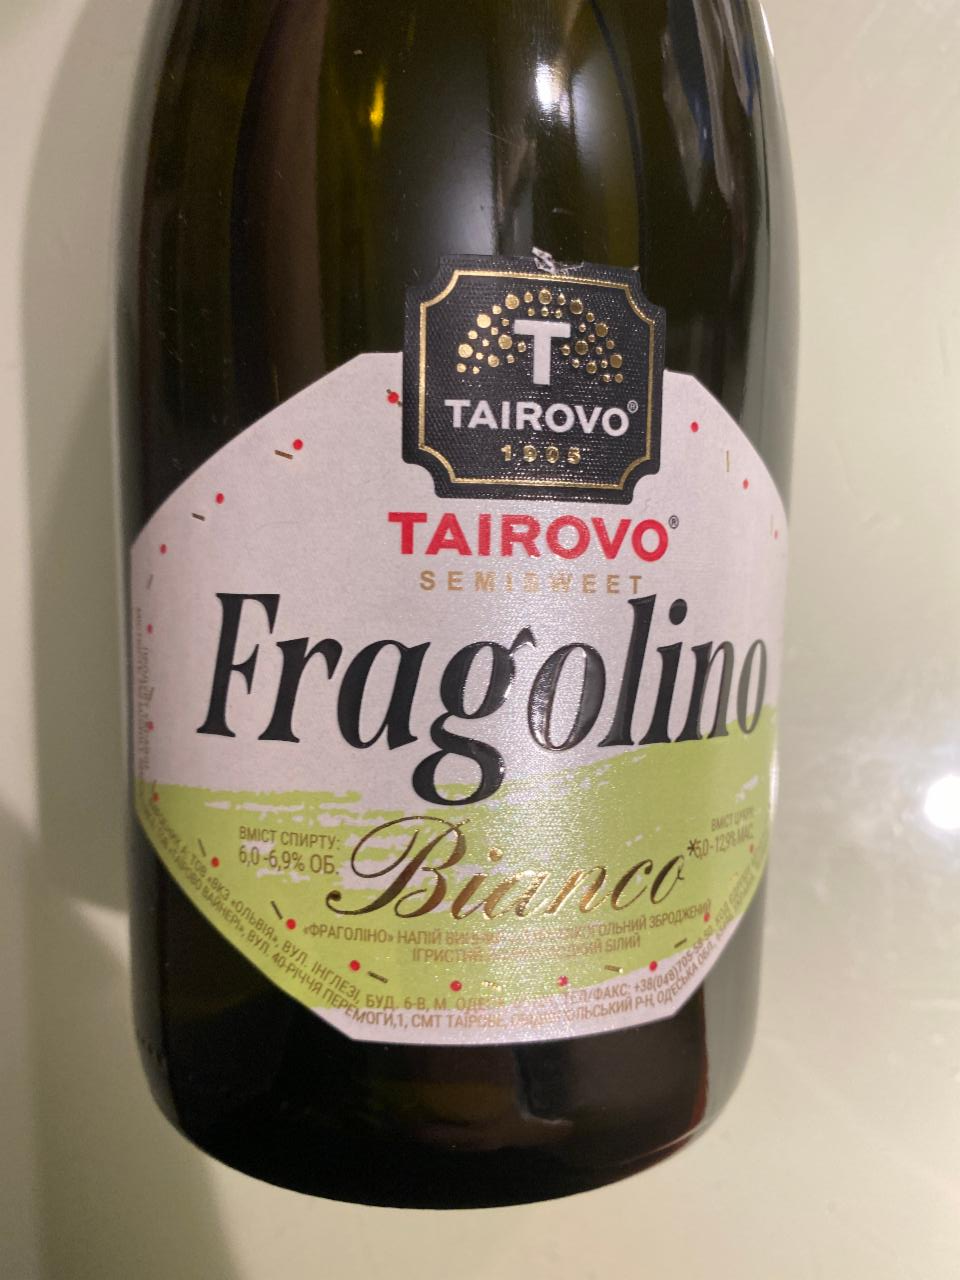 Фото - Напиток винный 6-6.9% игристый полусладкий белый Bianco Fragolino Таїрово Tairovo